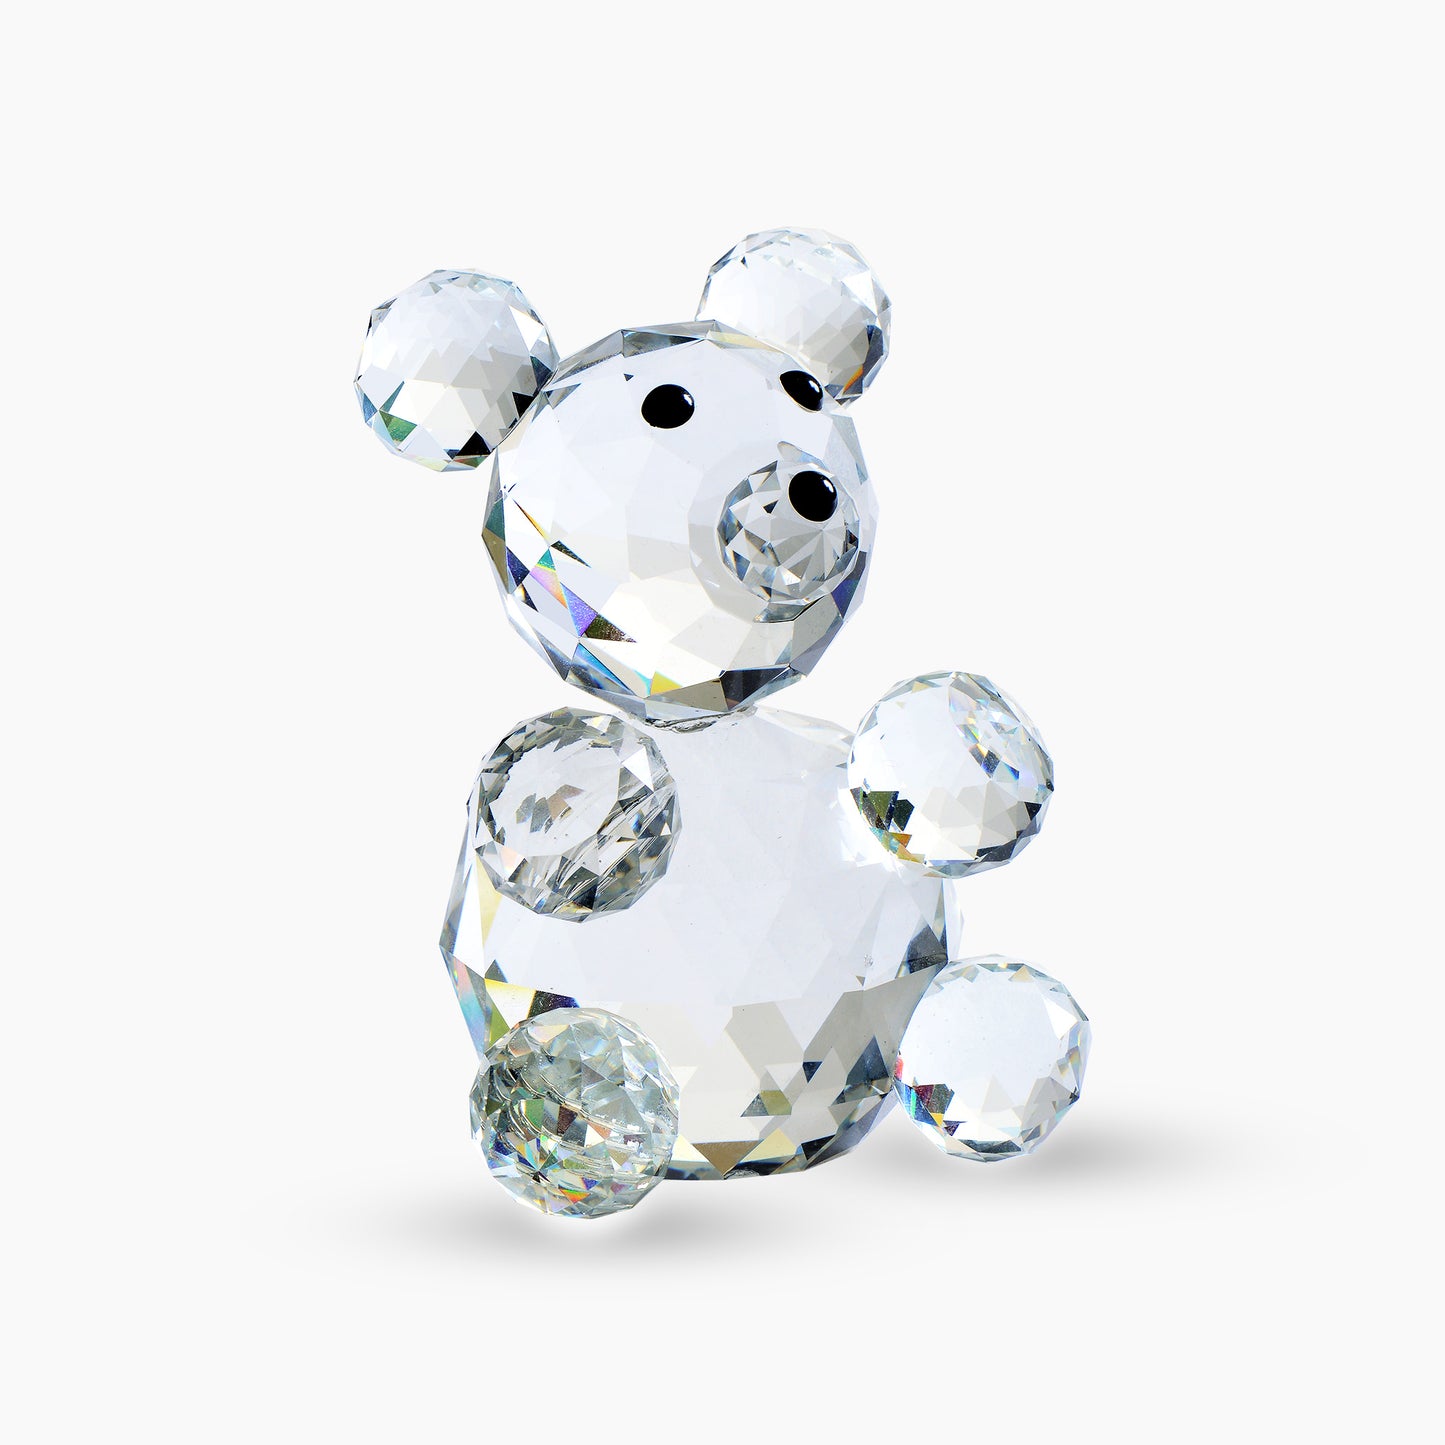 The Little Crystal Teddy Bear Display Figurine